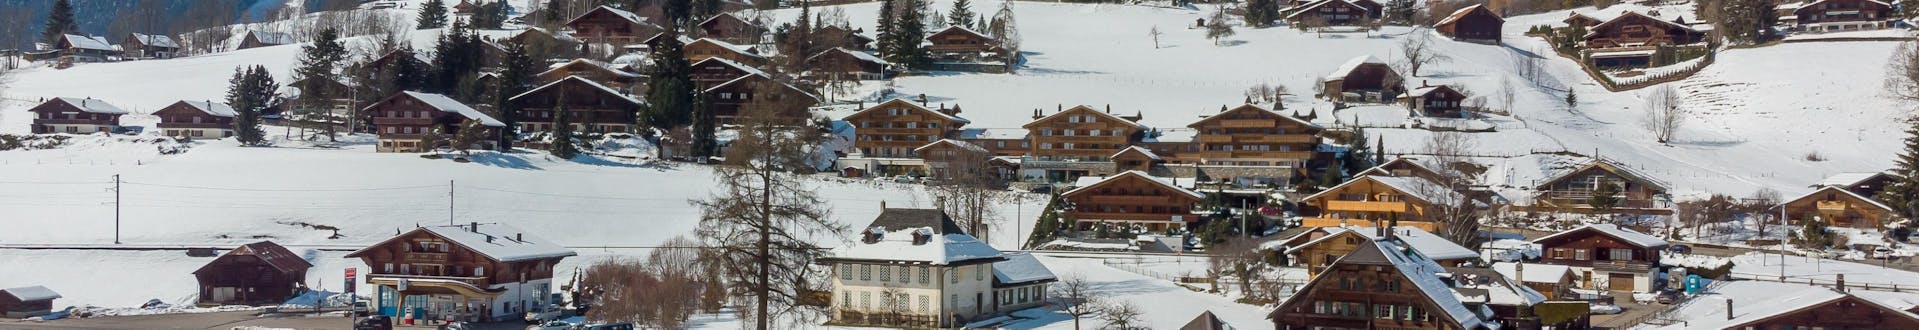 Vue aérienne de Rougemont en Suisse, couverte de neige en hiver.